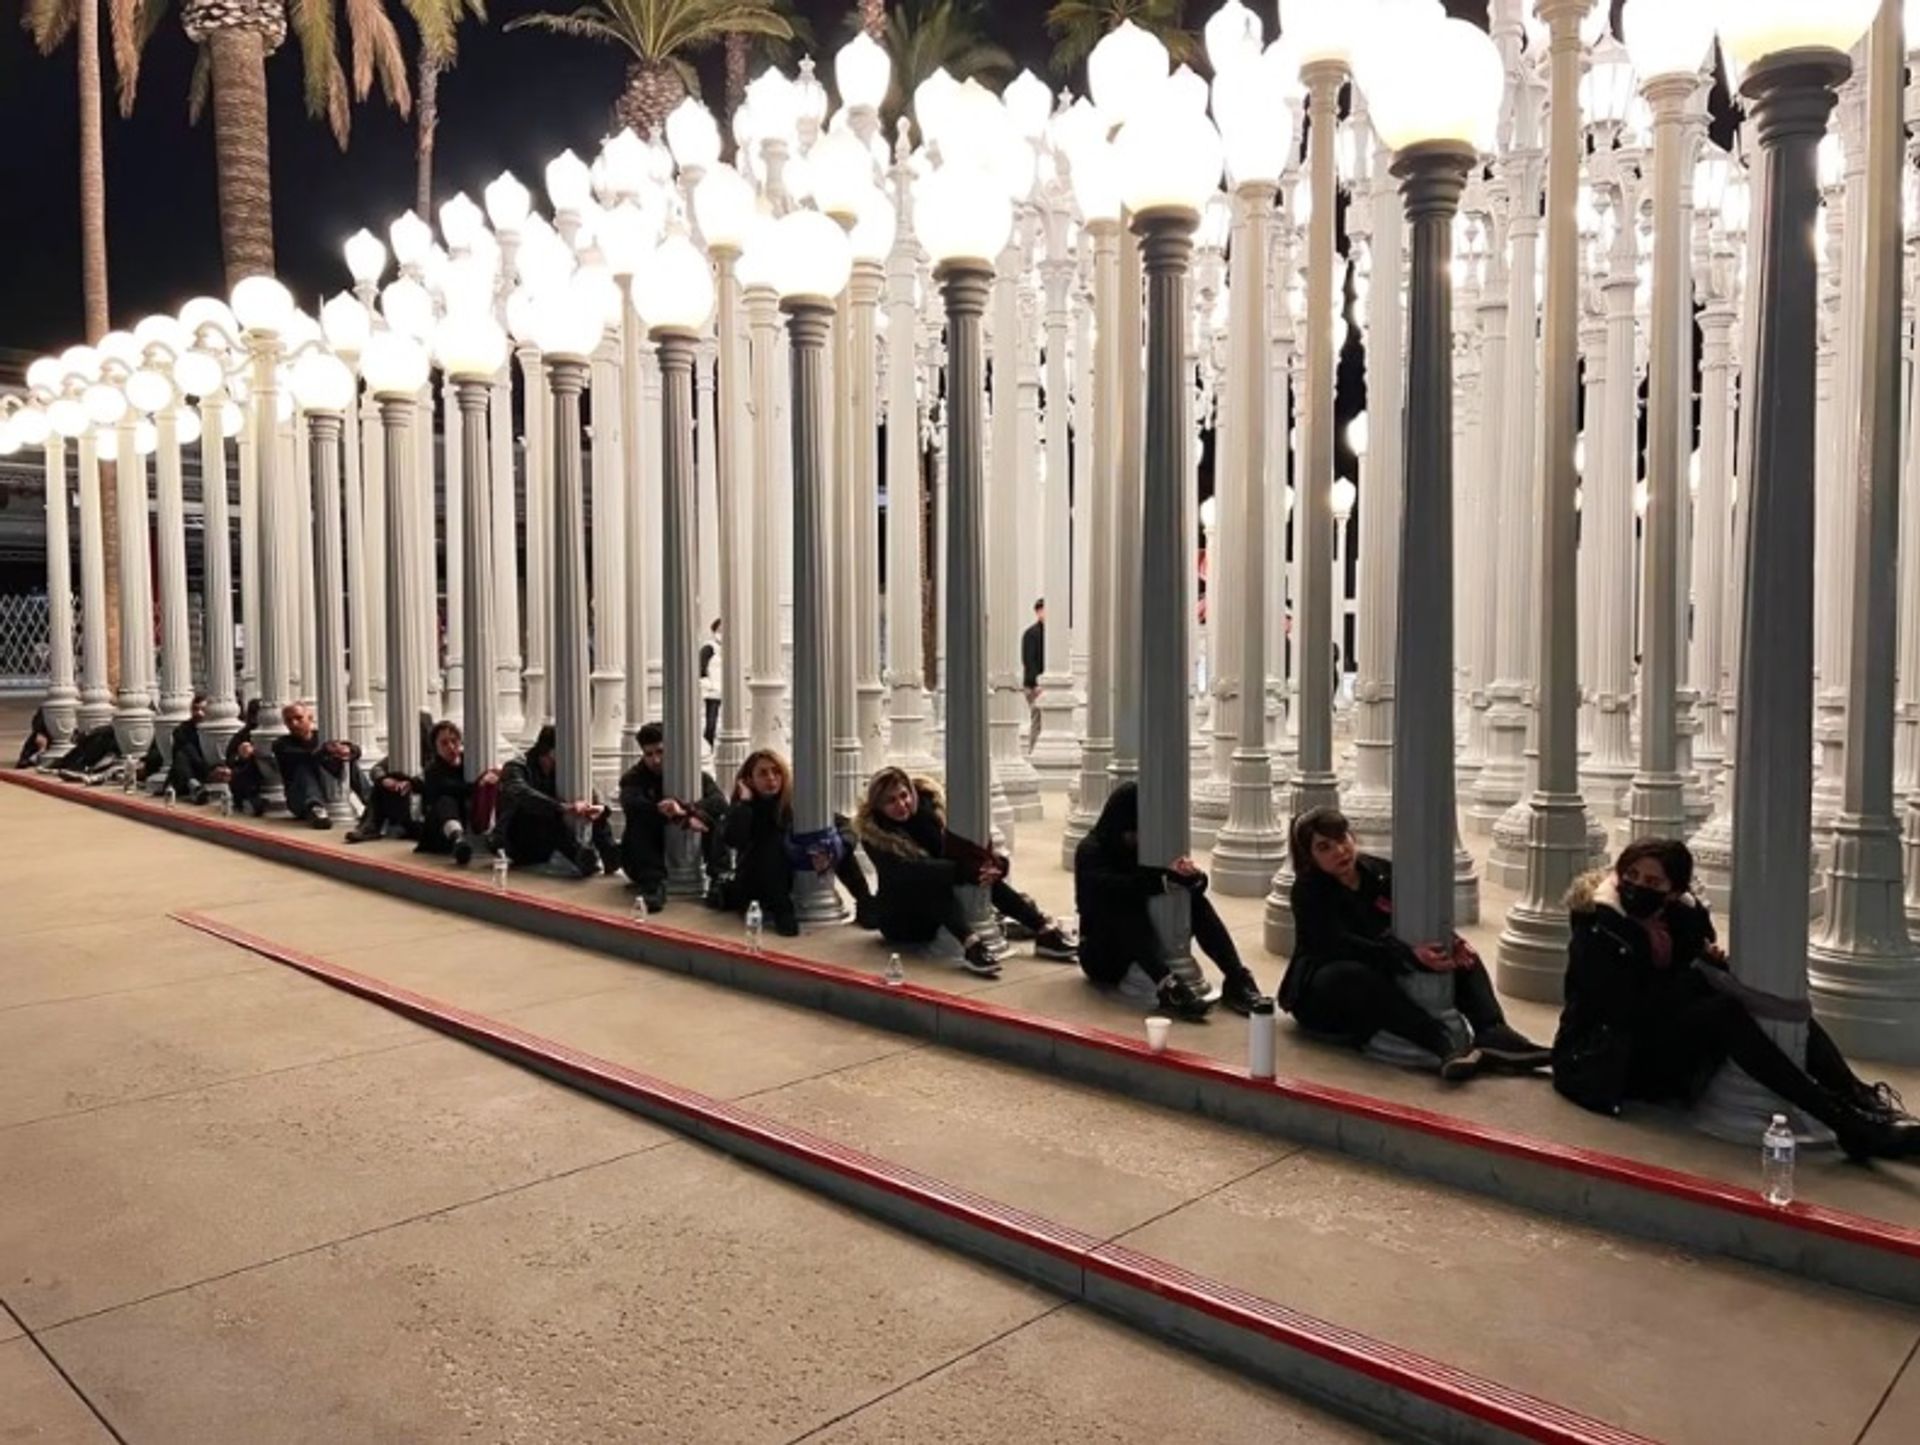 המפגינים אזקו את עצמם לתאורה האורבנית המהוללת של כריס בורדן (2008) ב"מוזיאון לאמנות" של מחוז לוס אנג'לס

באדיבות מפגינים